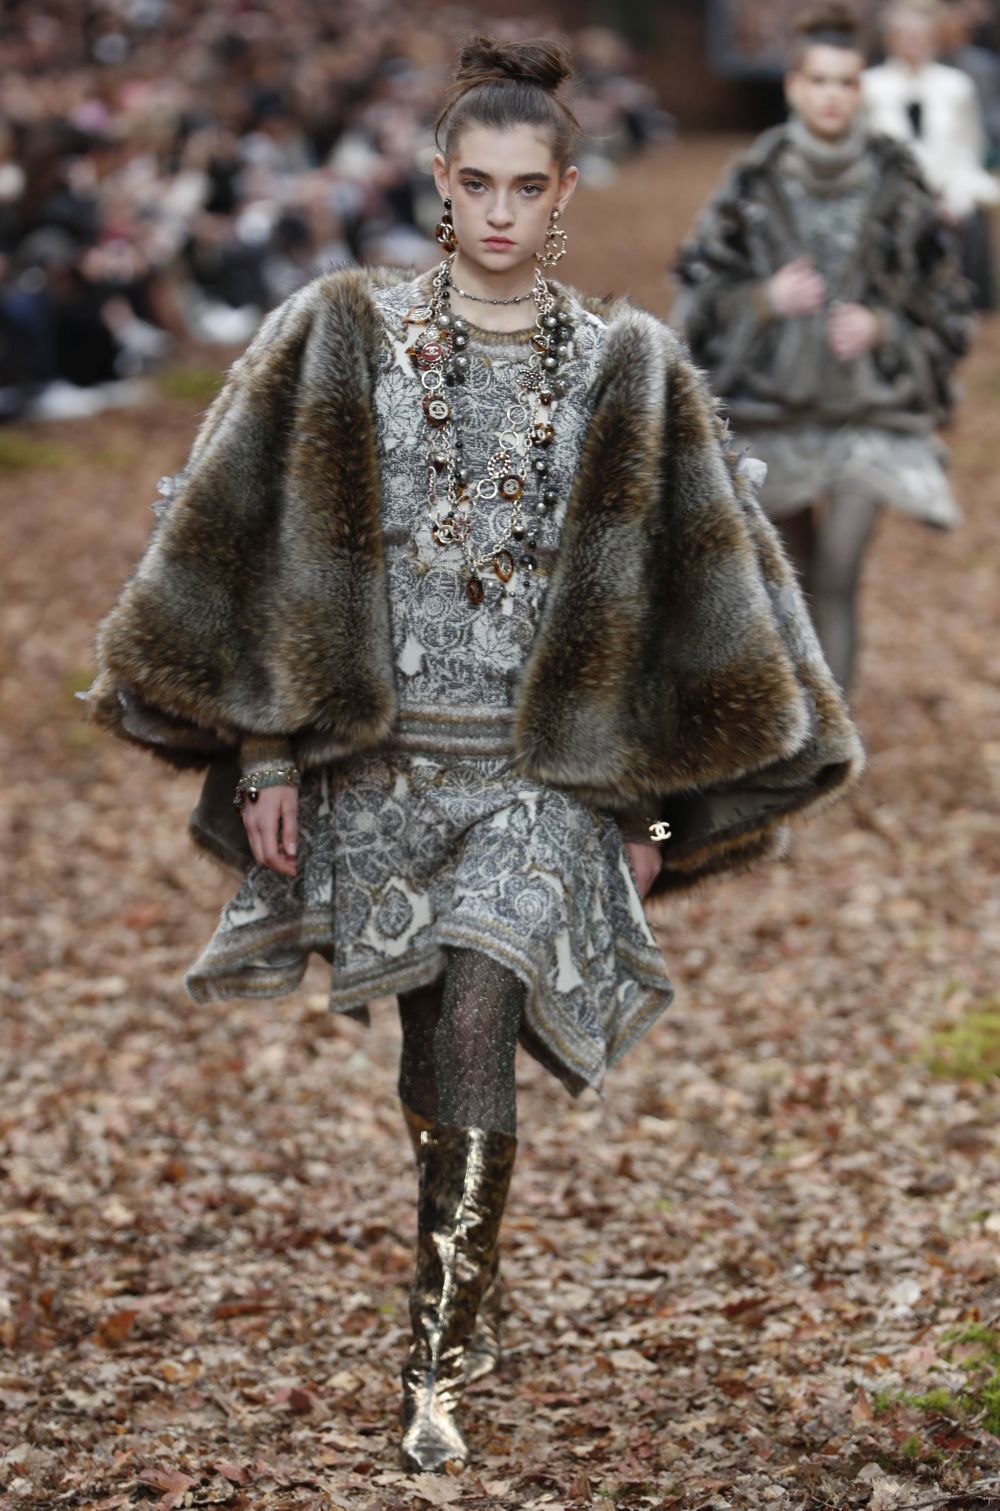 <strong>Карл Лагерфелд </strong>облече манекенките в<strong> дрехи с щамповани листа </strong>за ревюто, което<strong> възпя есента насред мъглива гора в Гран пале в Париж.</strong><br />
 <br />
В колекцията есен/зима, представена през последния ден на<strong> Парижката седмица на модата</strong>, има някои доста непрактични облекла за разходка сред природата, като златисти ботушки или черната рокличка. Престижната френска модна къща обаче предложи и някои удобни и топли модели - от ватирани панталони и кожени пончо до палта с пера по маншетите.<br />
 <br />
Характерните костюми от туид през следващата зима ще са с по-дълги тесни поли. Най-впечатляващи бяха палтата - дълги, с щамповани листа в комбинация със синьо и розово, или зелено и оранжево.<br />
 